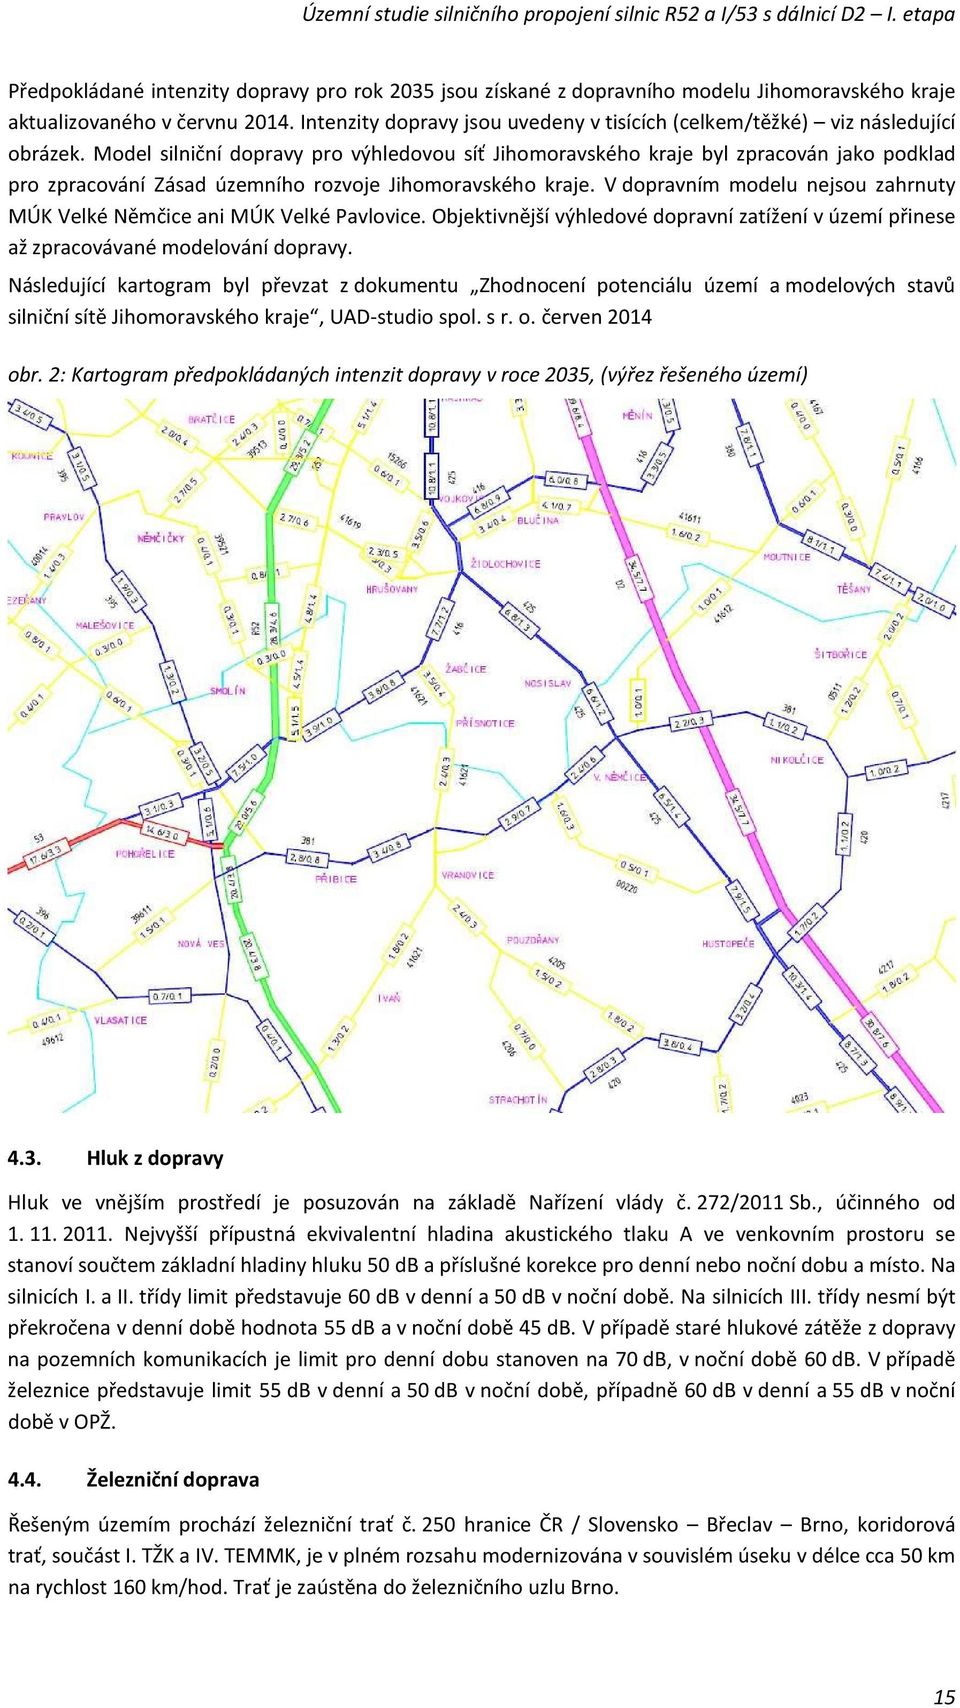 Model silniční dopravy pro výhledovou síť Jihomoravského kraje byl zpracován jako podklad pro zpracování Zásad územního rozvoje Jihomoravského kraje.